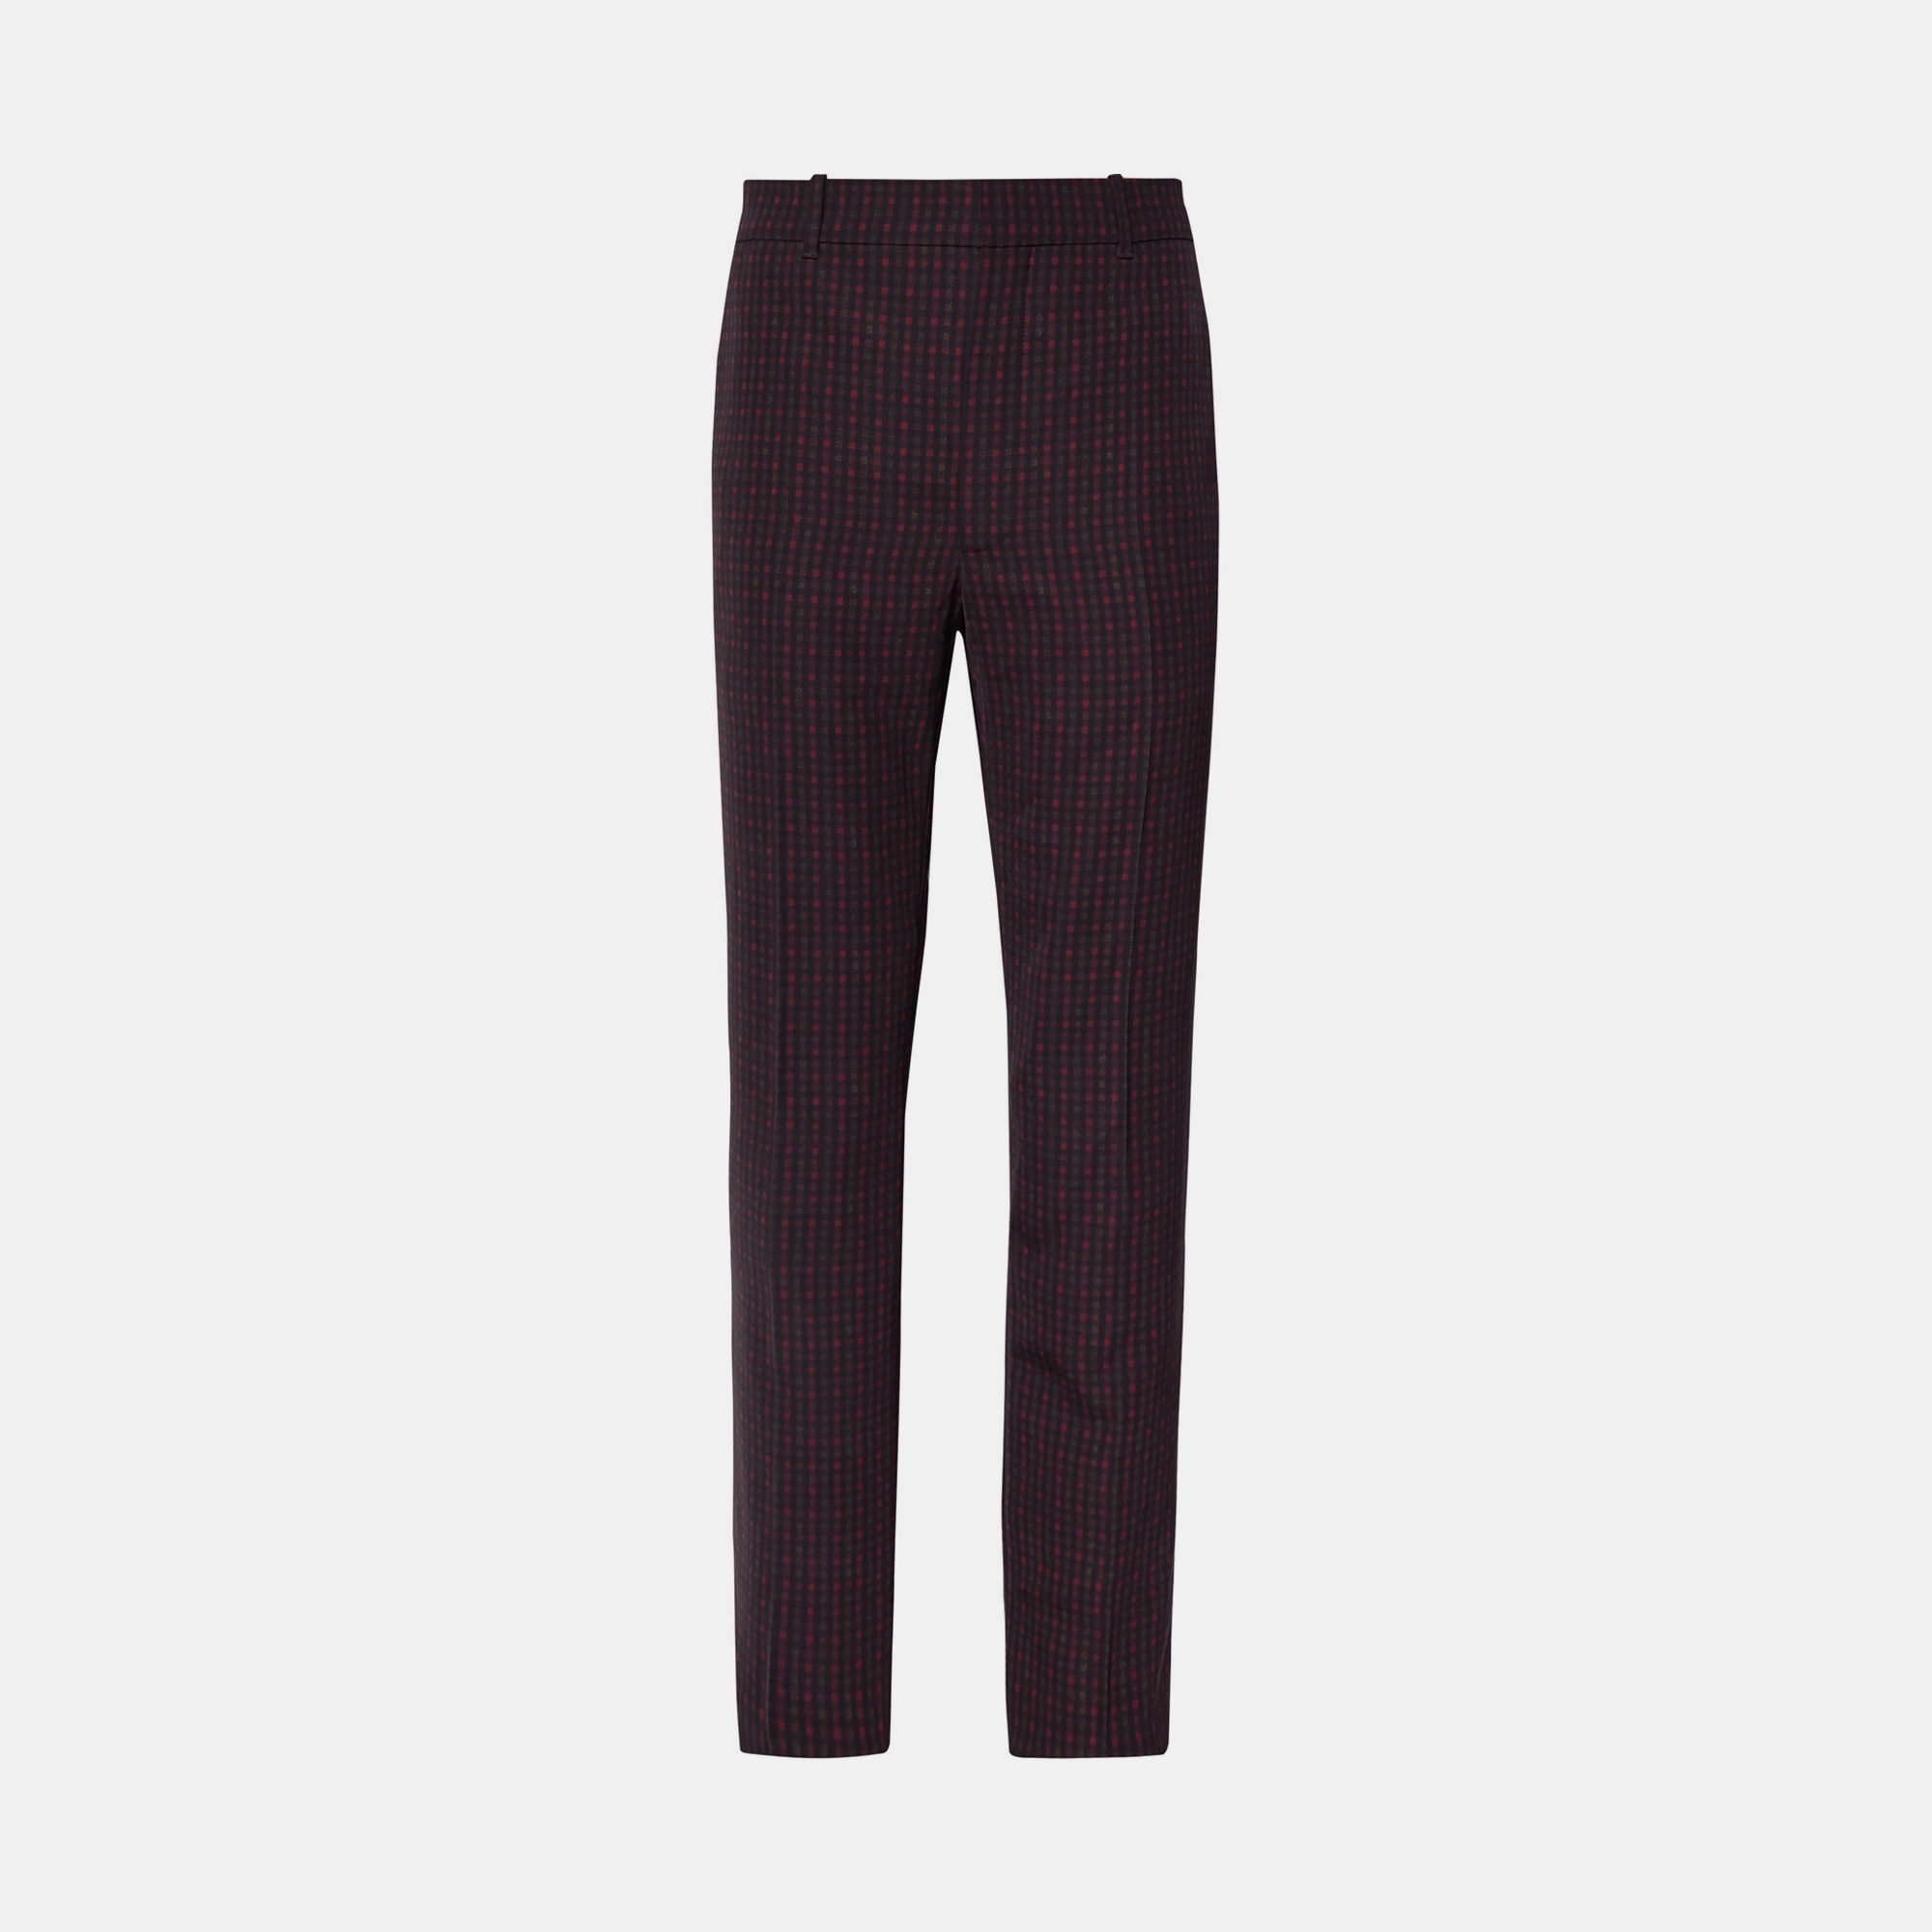 Balenciaga polyester pants 44